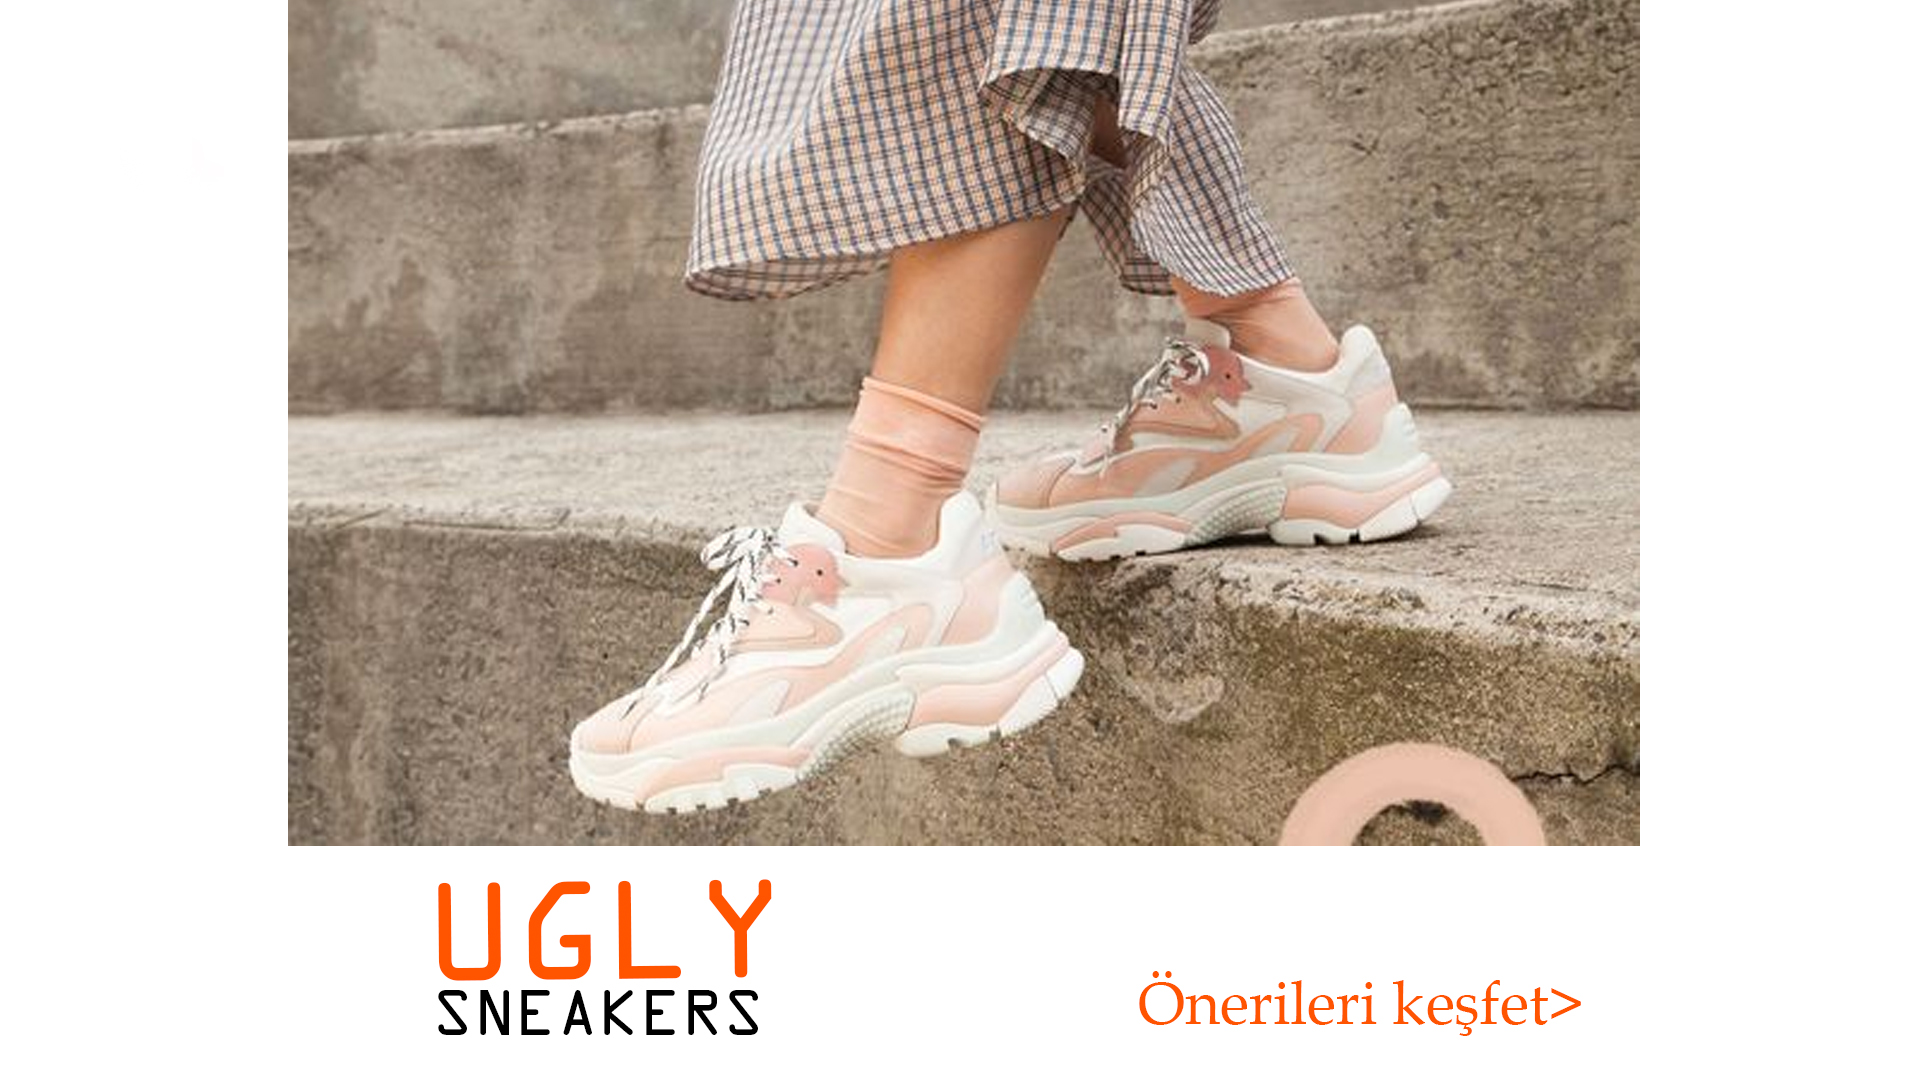 Ugly Sneakers ile Tamamlayabileceğiniz 5 Kombin Önerisi